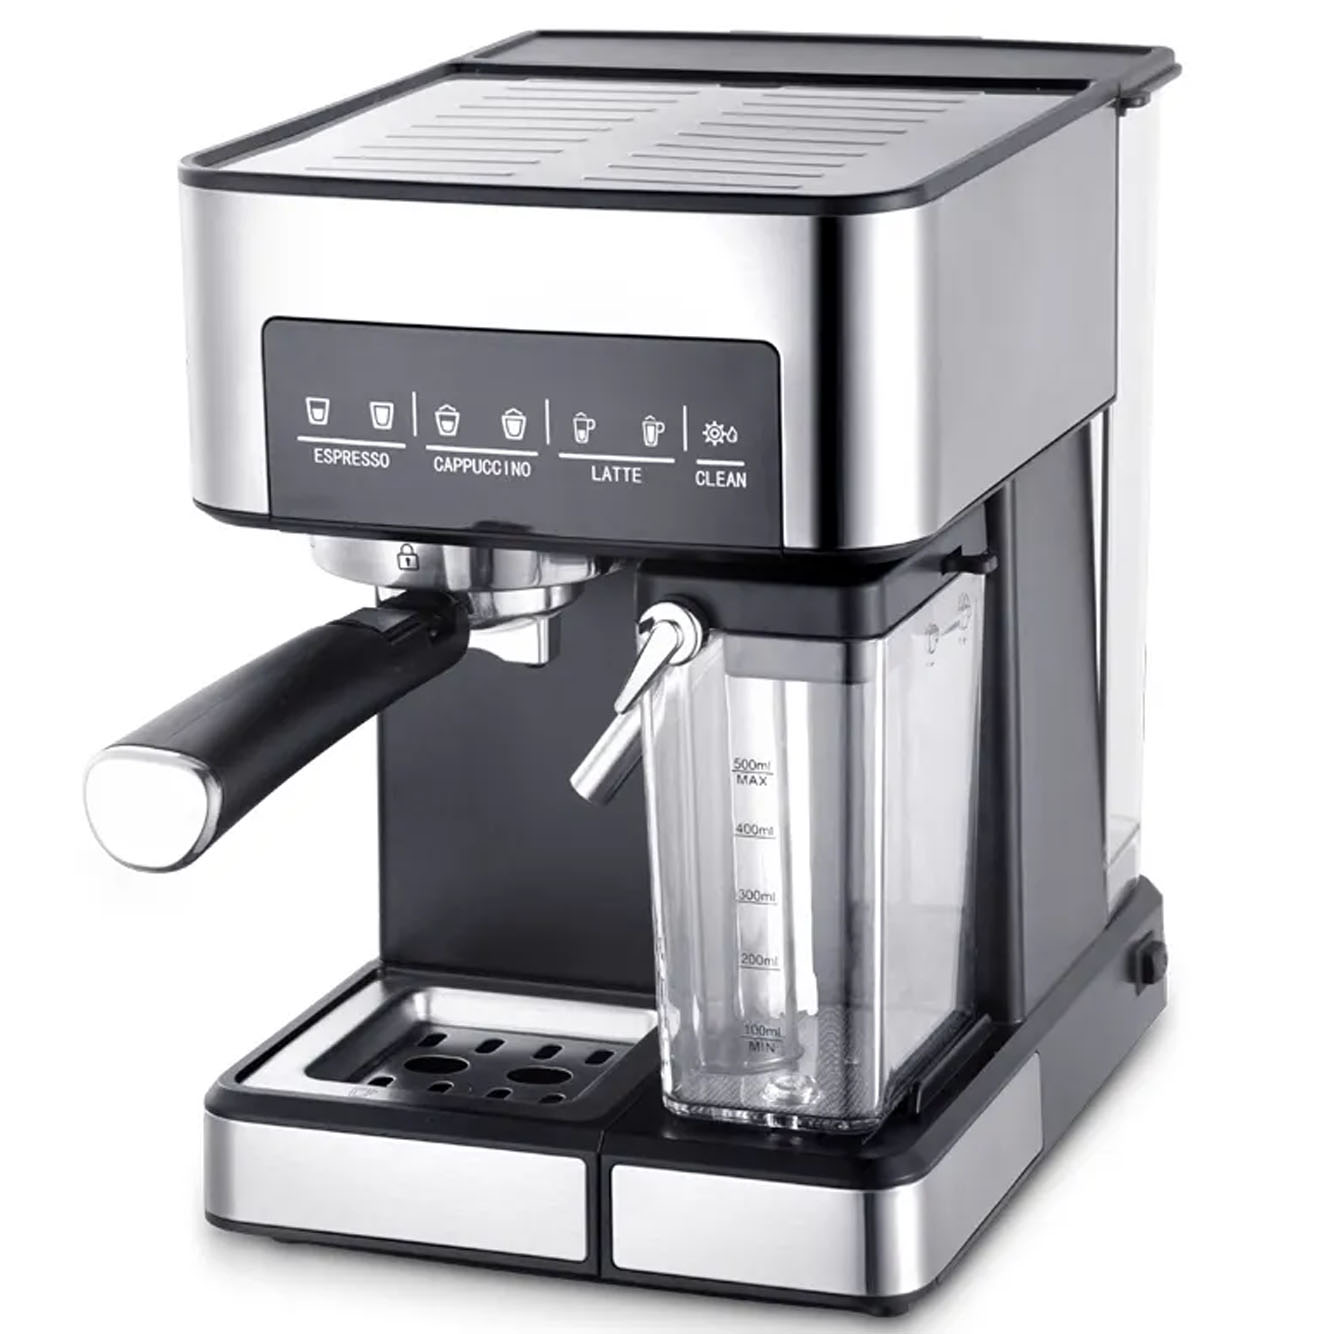 Cafetera automática para el hogar, cafetera de goteo de 8.1 fl oz, 1400 W,  mini cafetera americana, temperatura constante de 185.0 °F, silenciosa